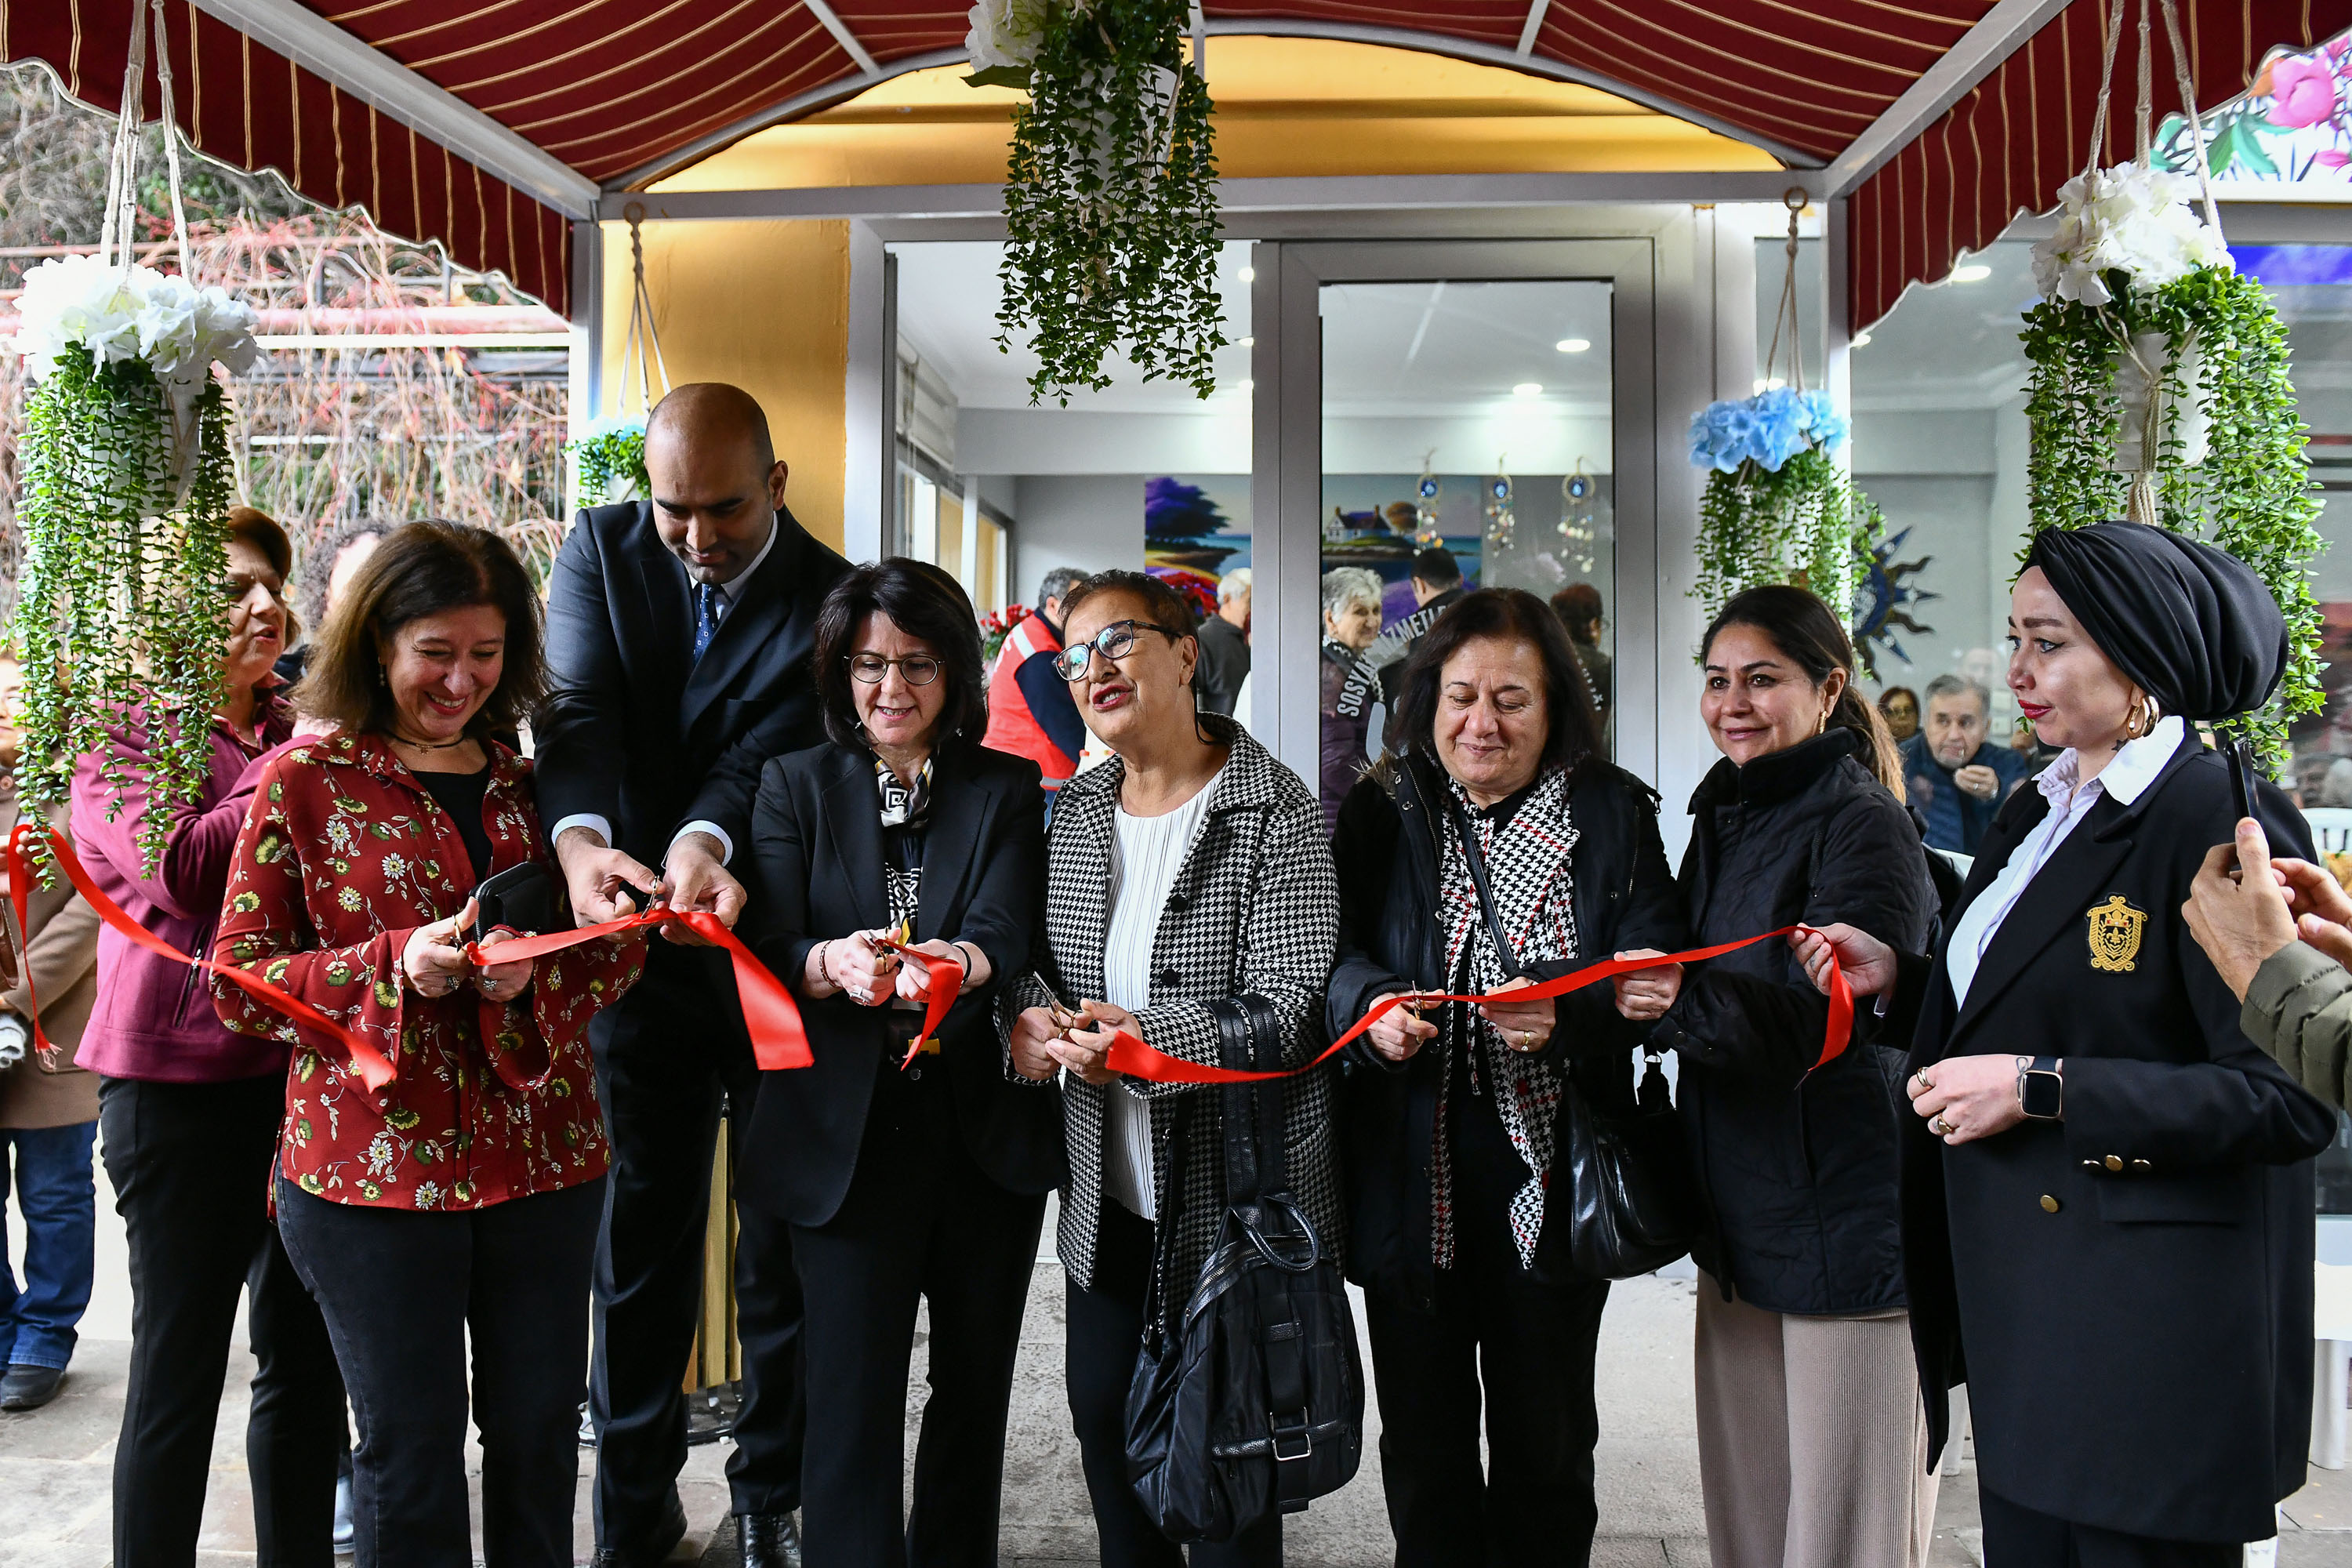 Ankara’da ‘Dikmen Yaşlılar Lokali’ açıldı